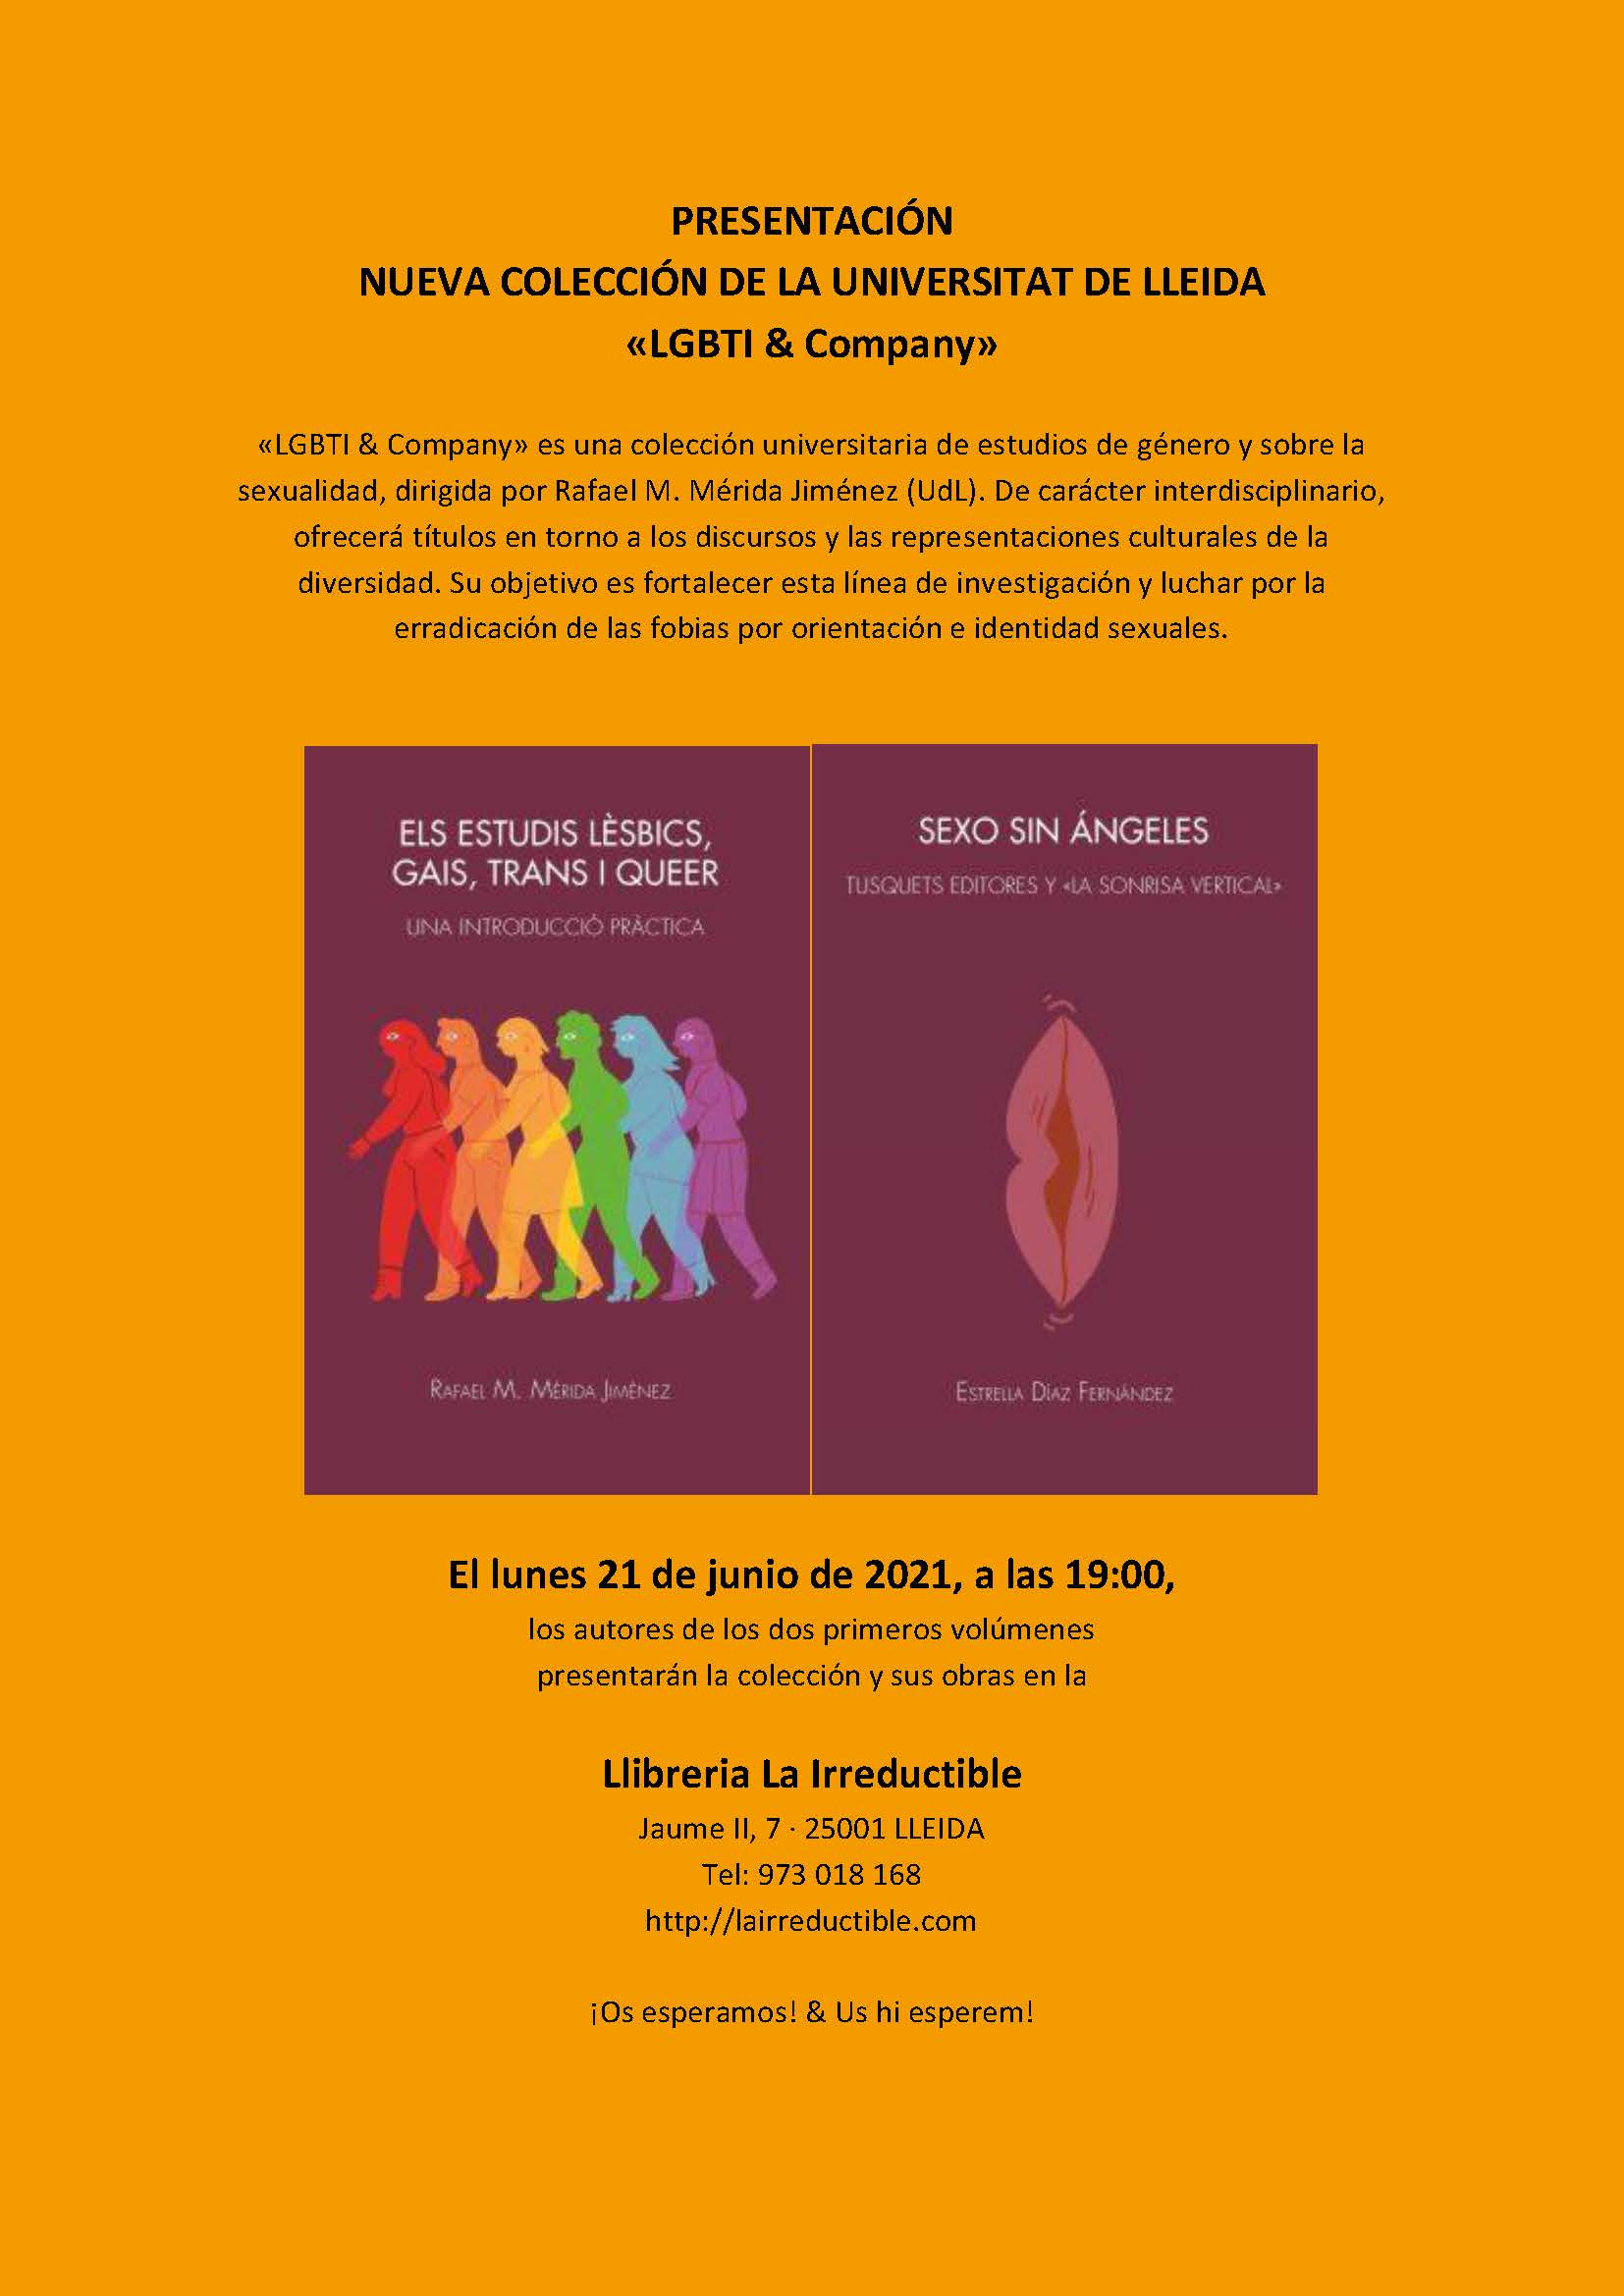 PRESENTACIÓN LLEIDA LGBTI and COMPANY-1